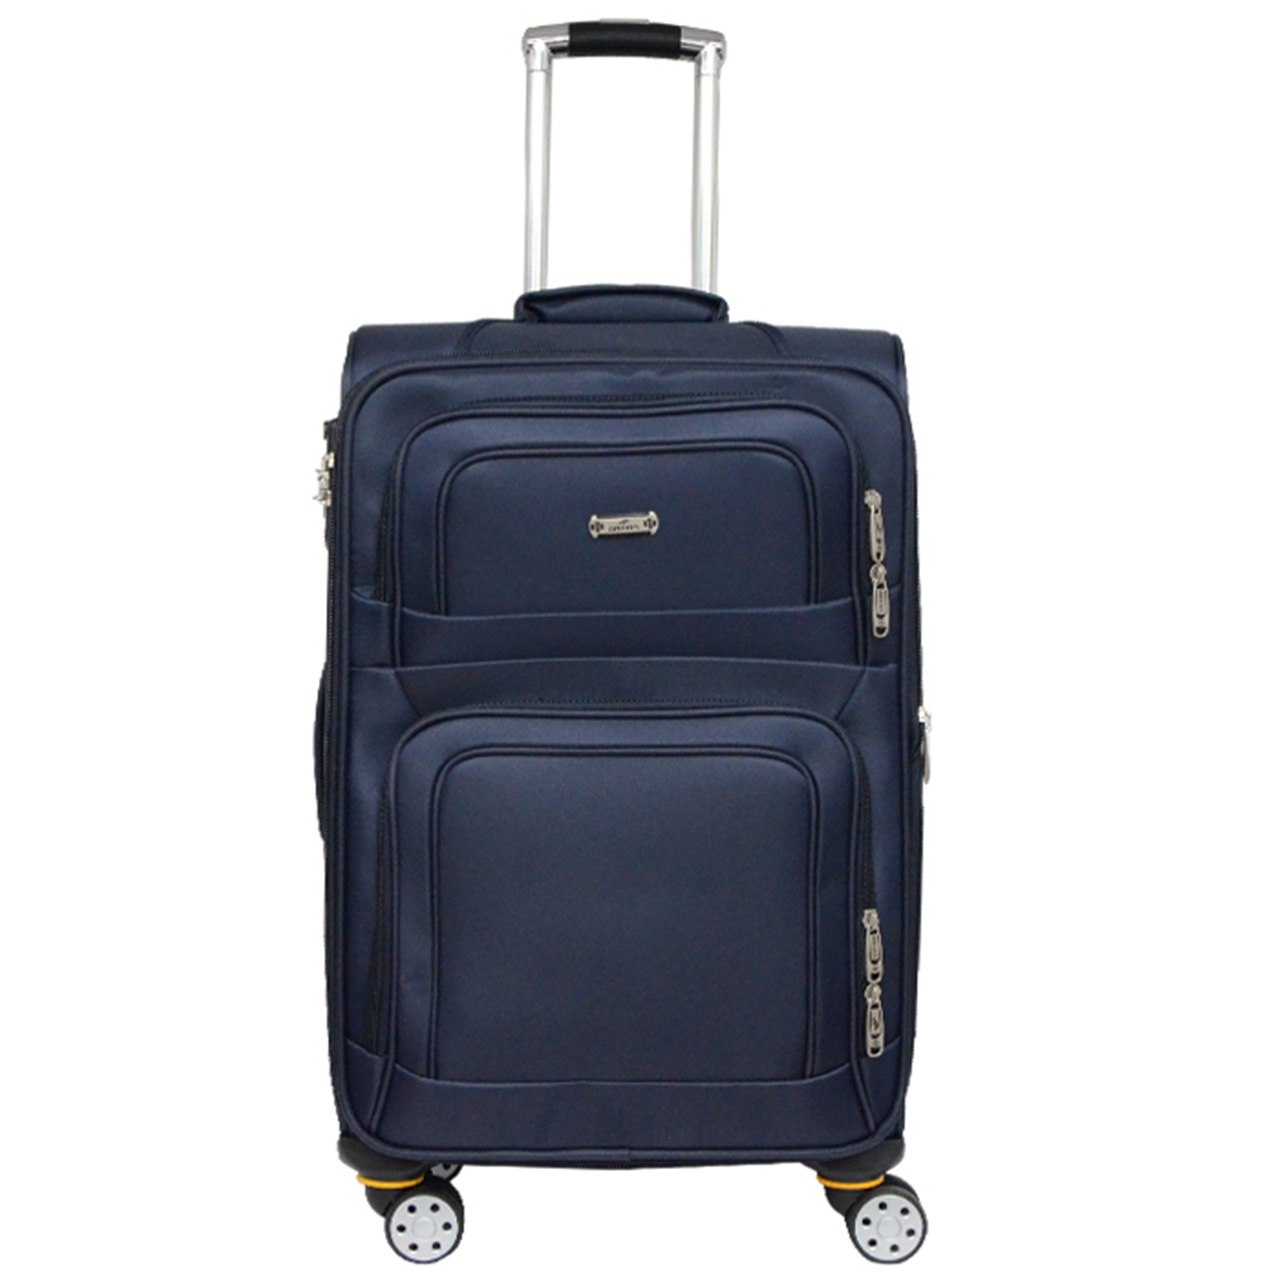 چمدان آنونس مدل 24 - 55 - 2014